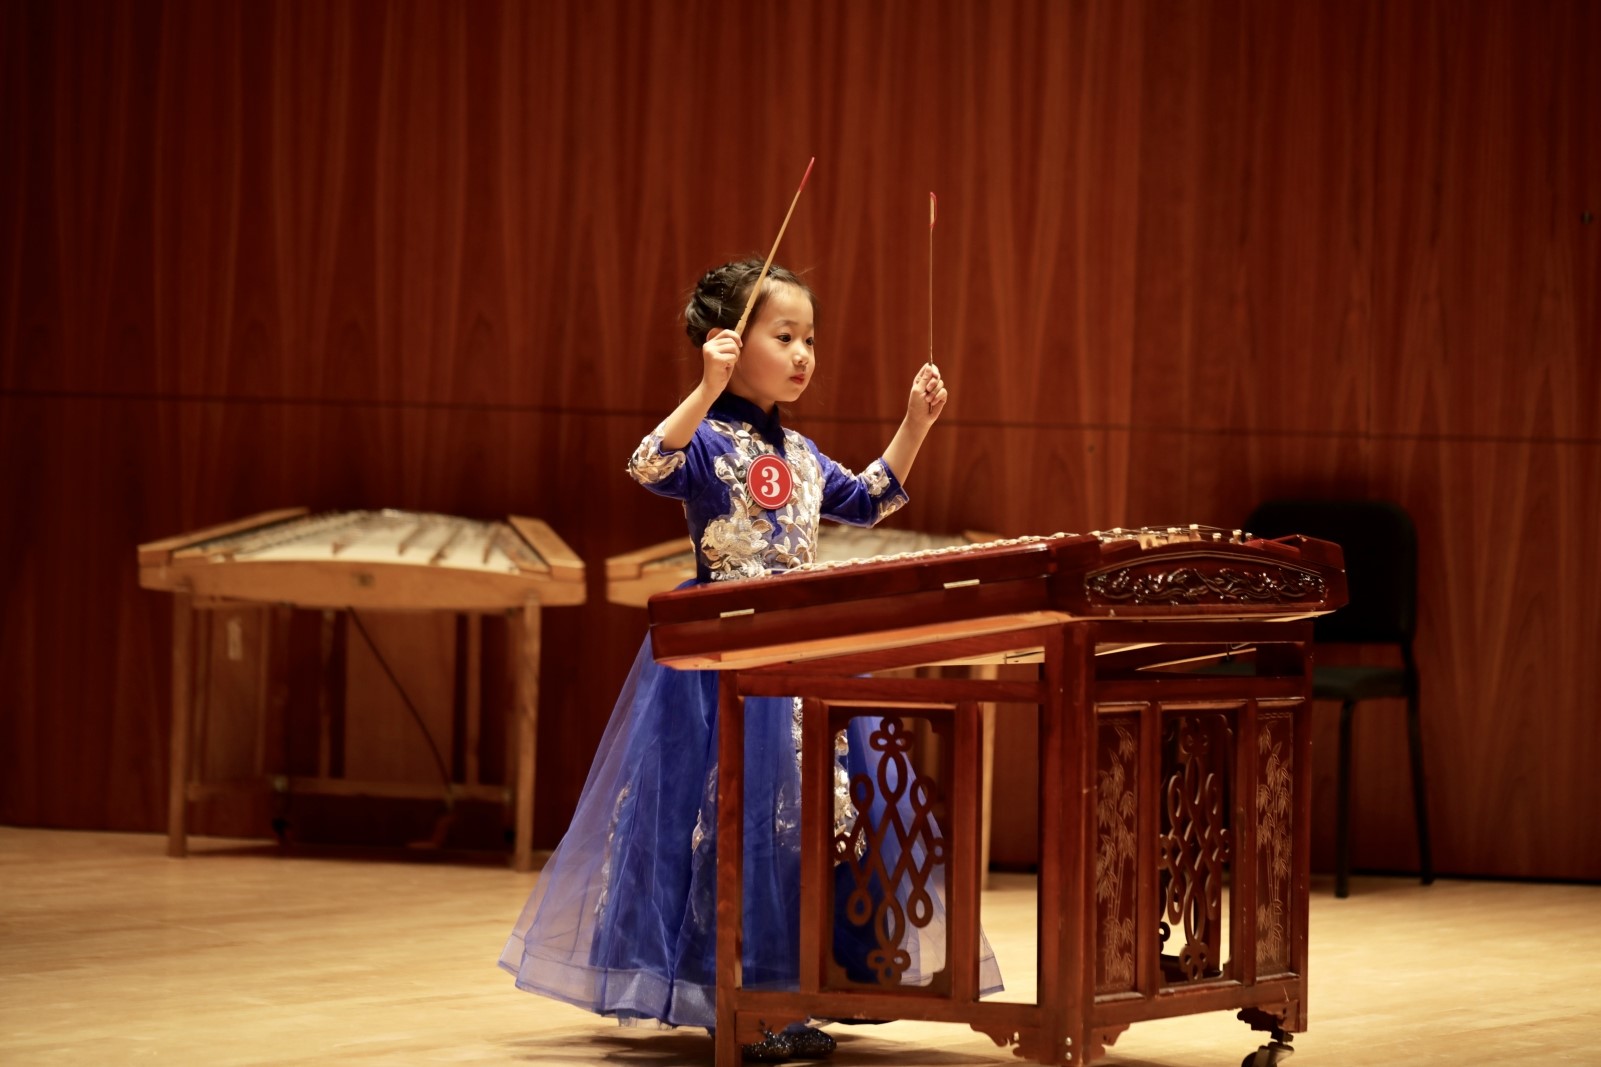 中国扬琴声扬百年伊斯曼 音乐搭建国际合作桥梁